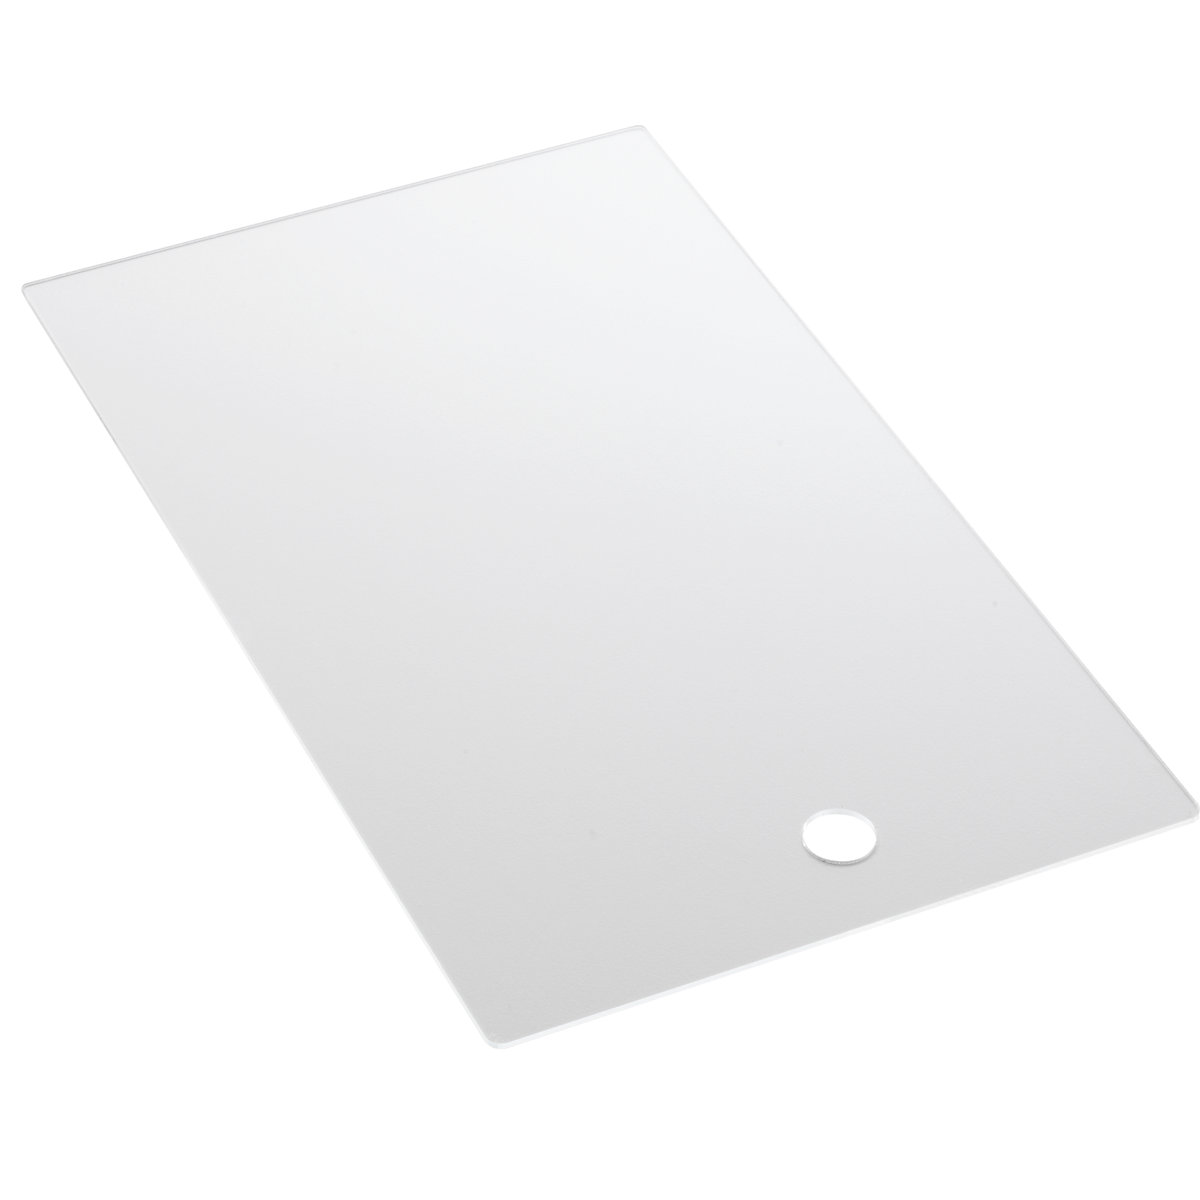 mauser Staubdeckel für Regalkästen, transparent, für LxB 400 x 234 mm, VE 10 Stk